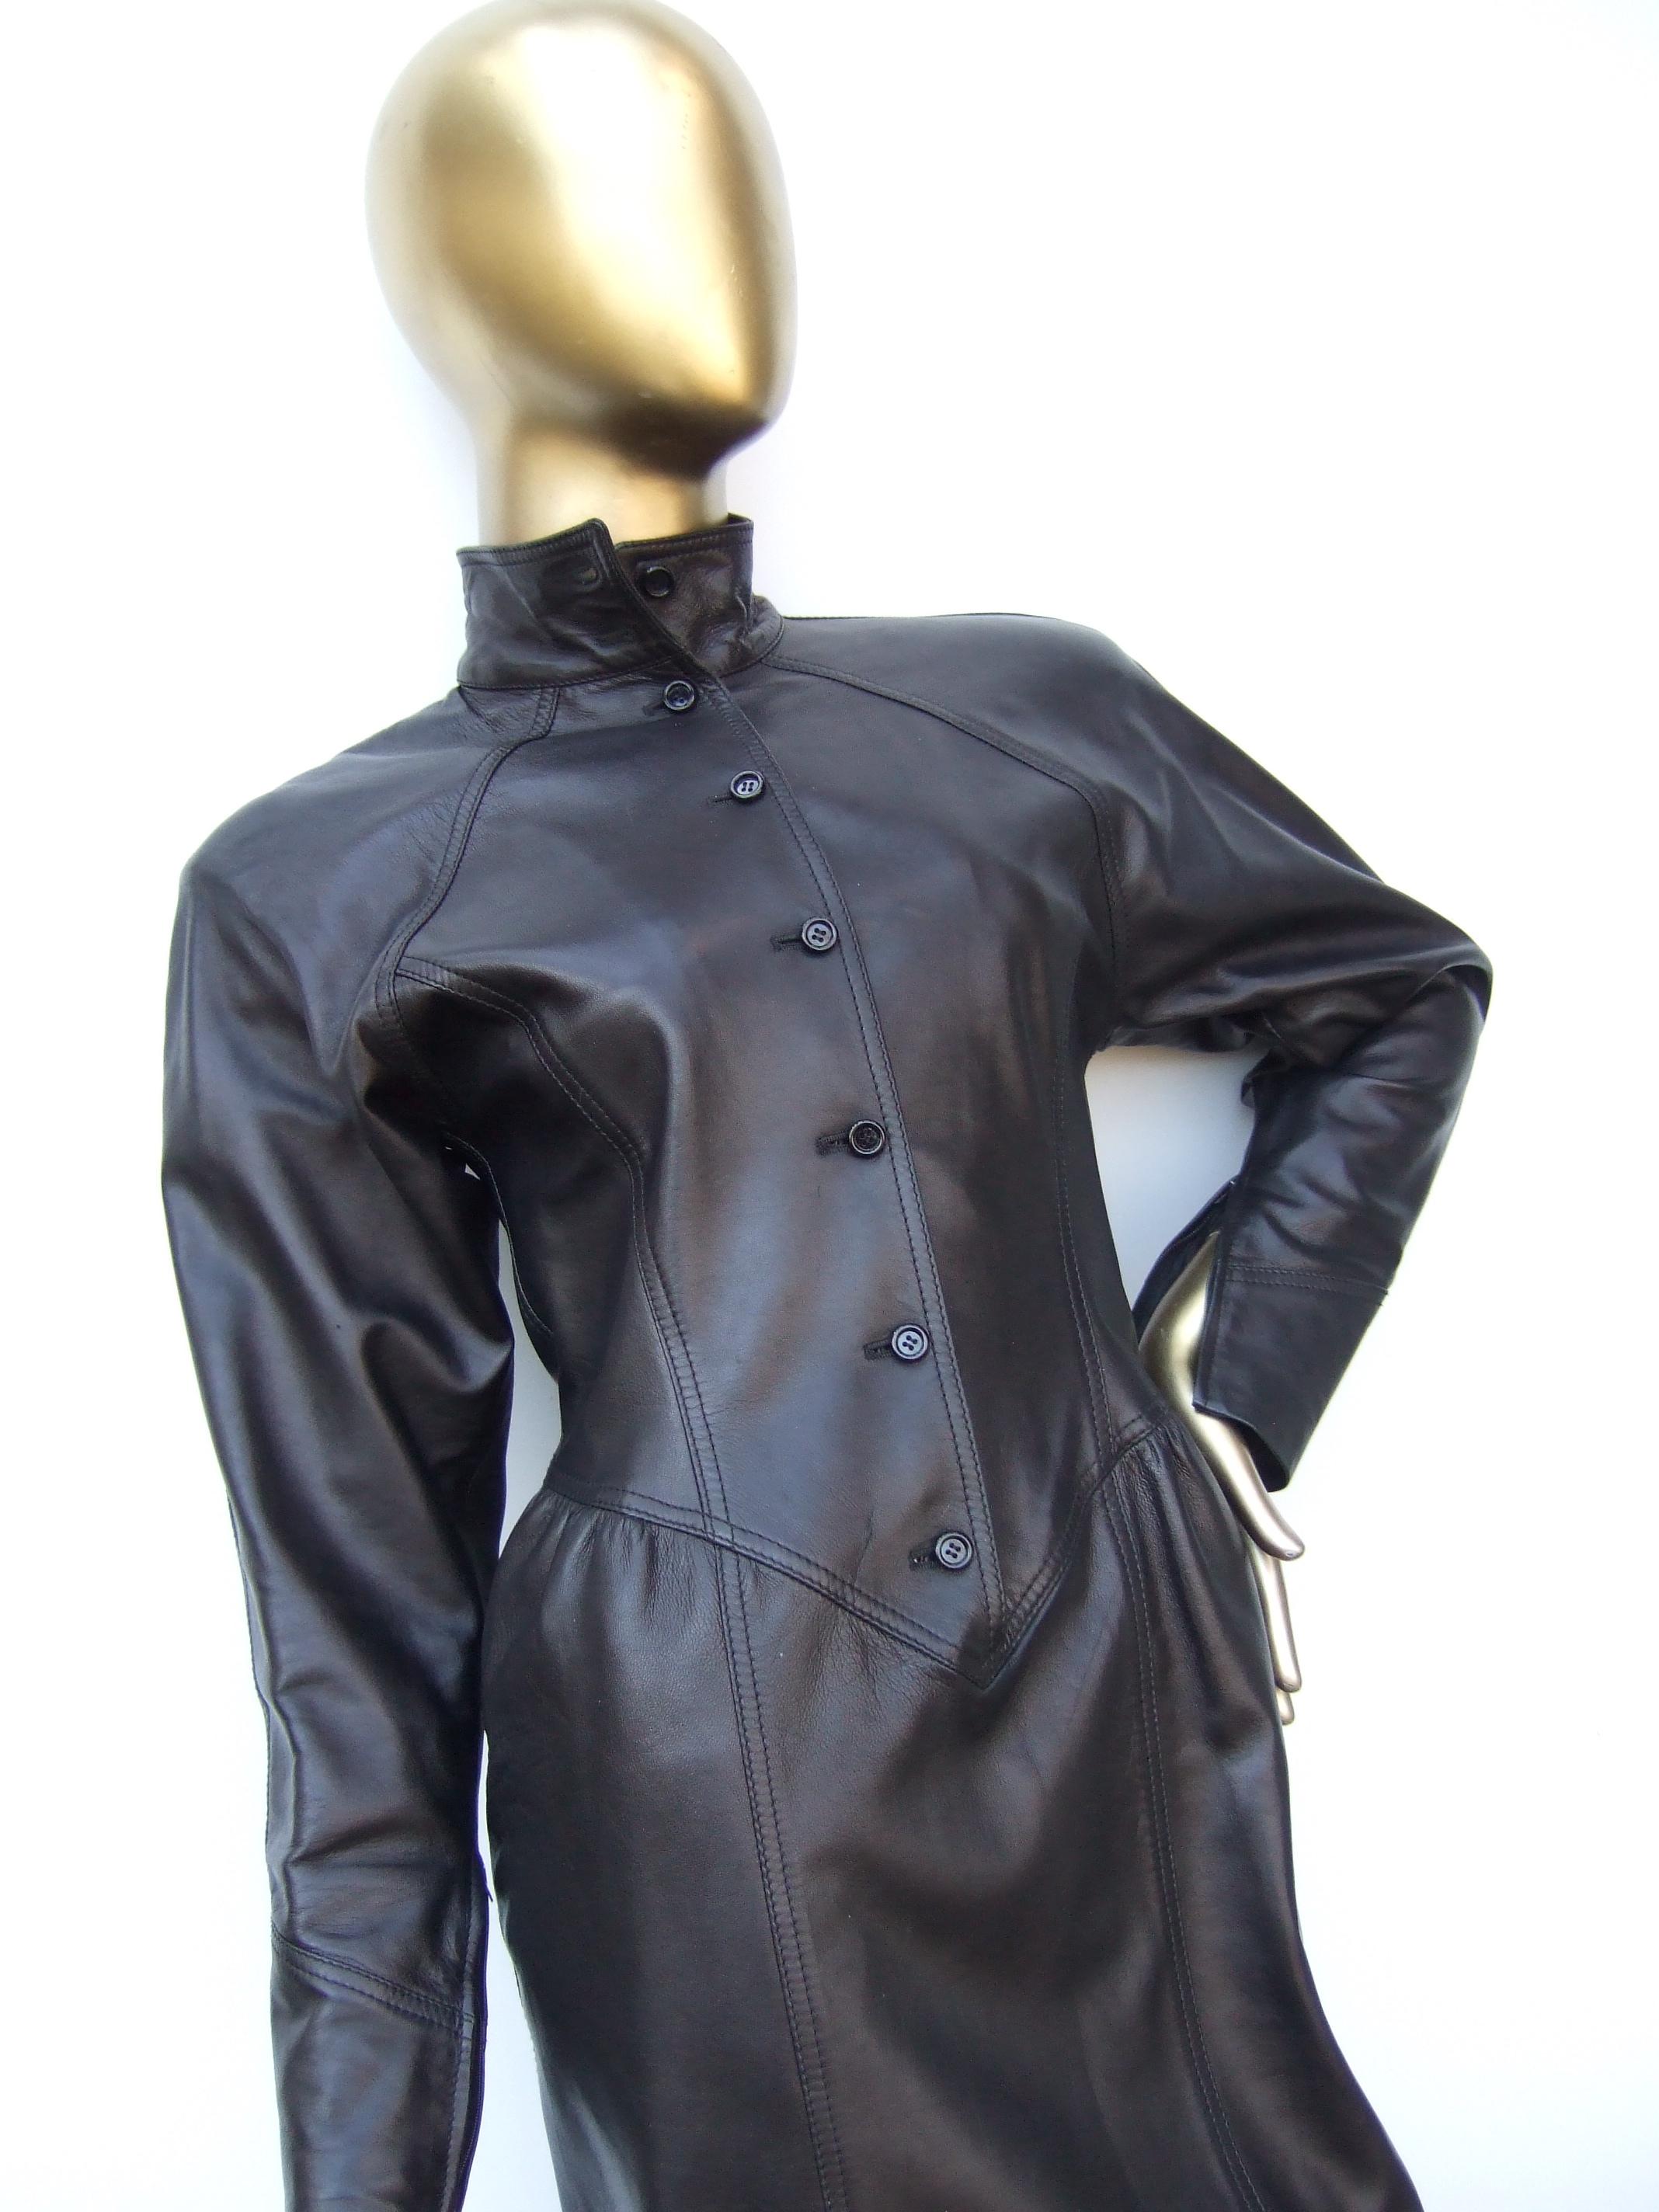 Emanuel Ungaro Paris Robe d'avant-garde en cuir marron Fait en Italie c 1980
Cette robe audacieuse est fabriquée en cuir souple et lisse de couleur marron chocolat. 
Une série de petits boutons noirs en résine descendent le long de la